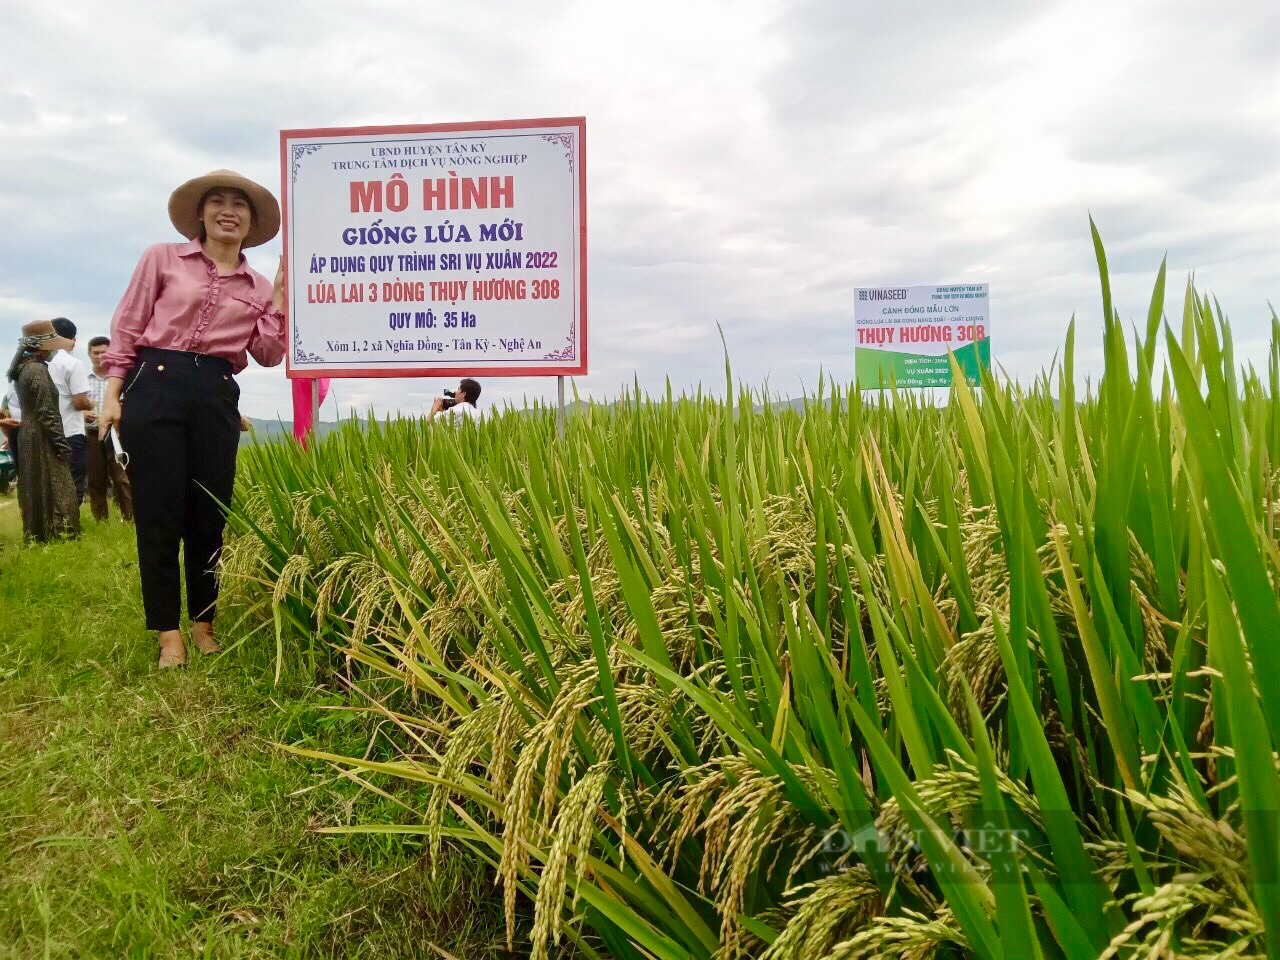 Giá phân thuốc bón cho lúa tăng làm cách này nông dân xứ Nghệ vẫn tiết  kiệm được 1520 chi phí